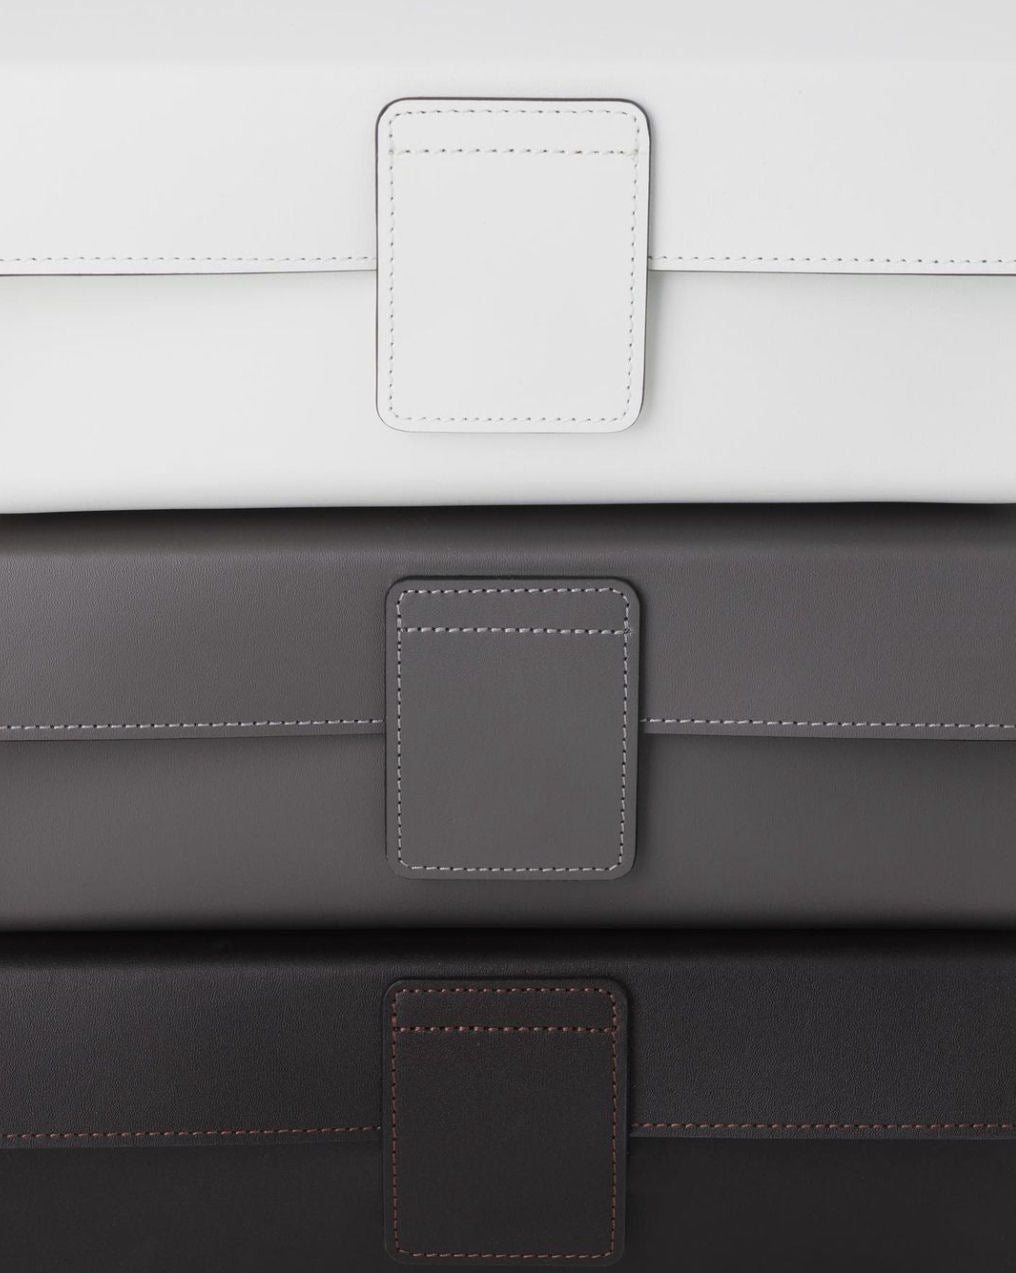 Black-Brown Nappa Leather Multi-Purpuse Box by Decor Wather - |VESIMI Design|